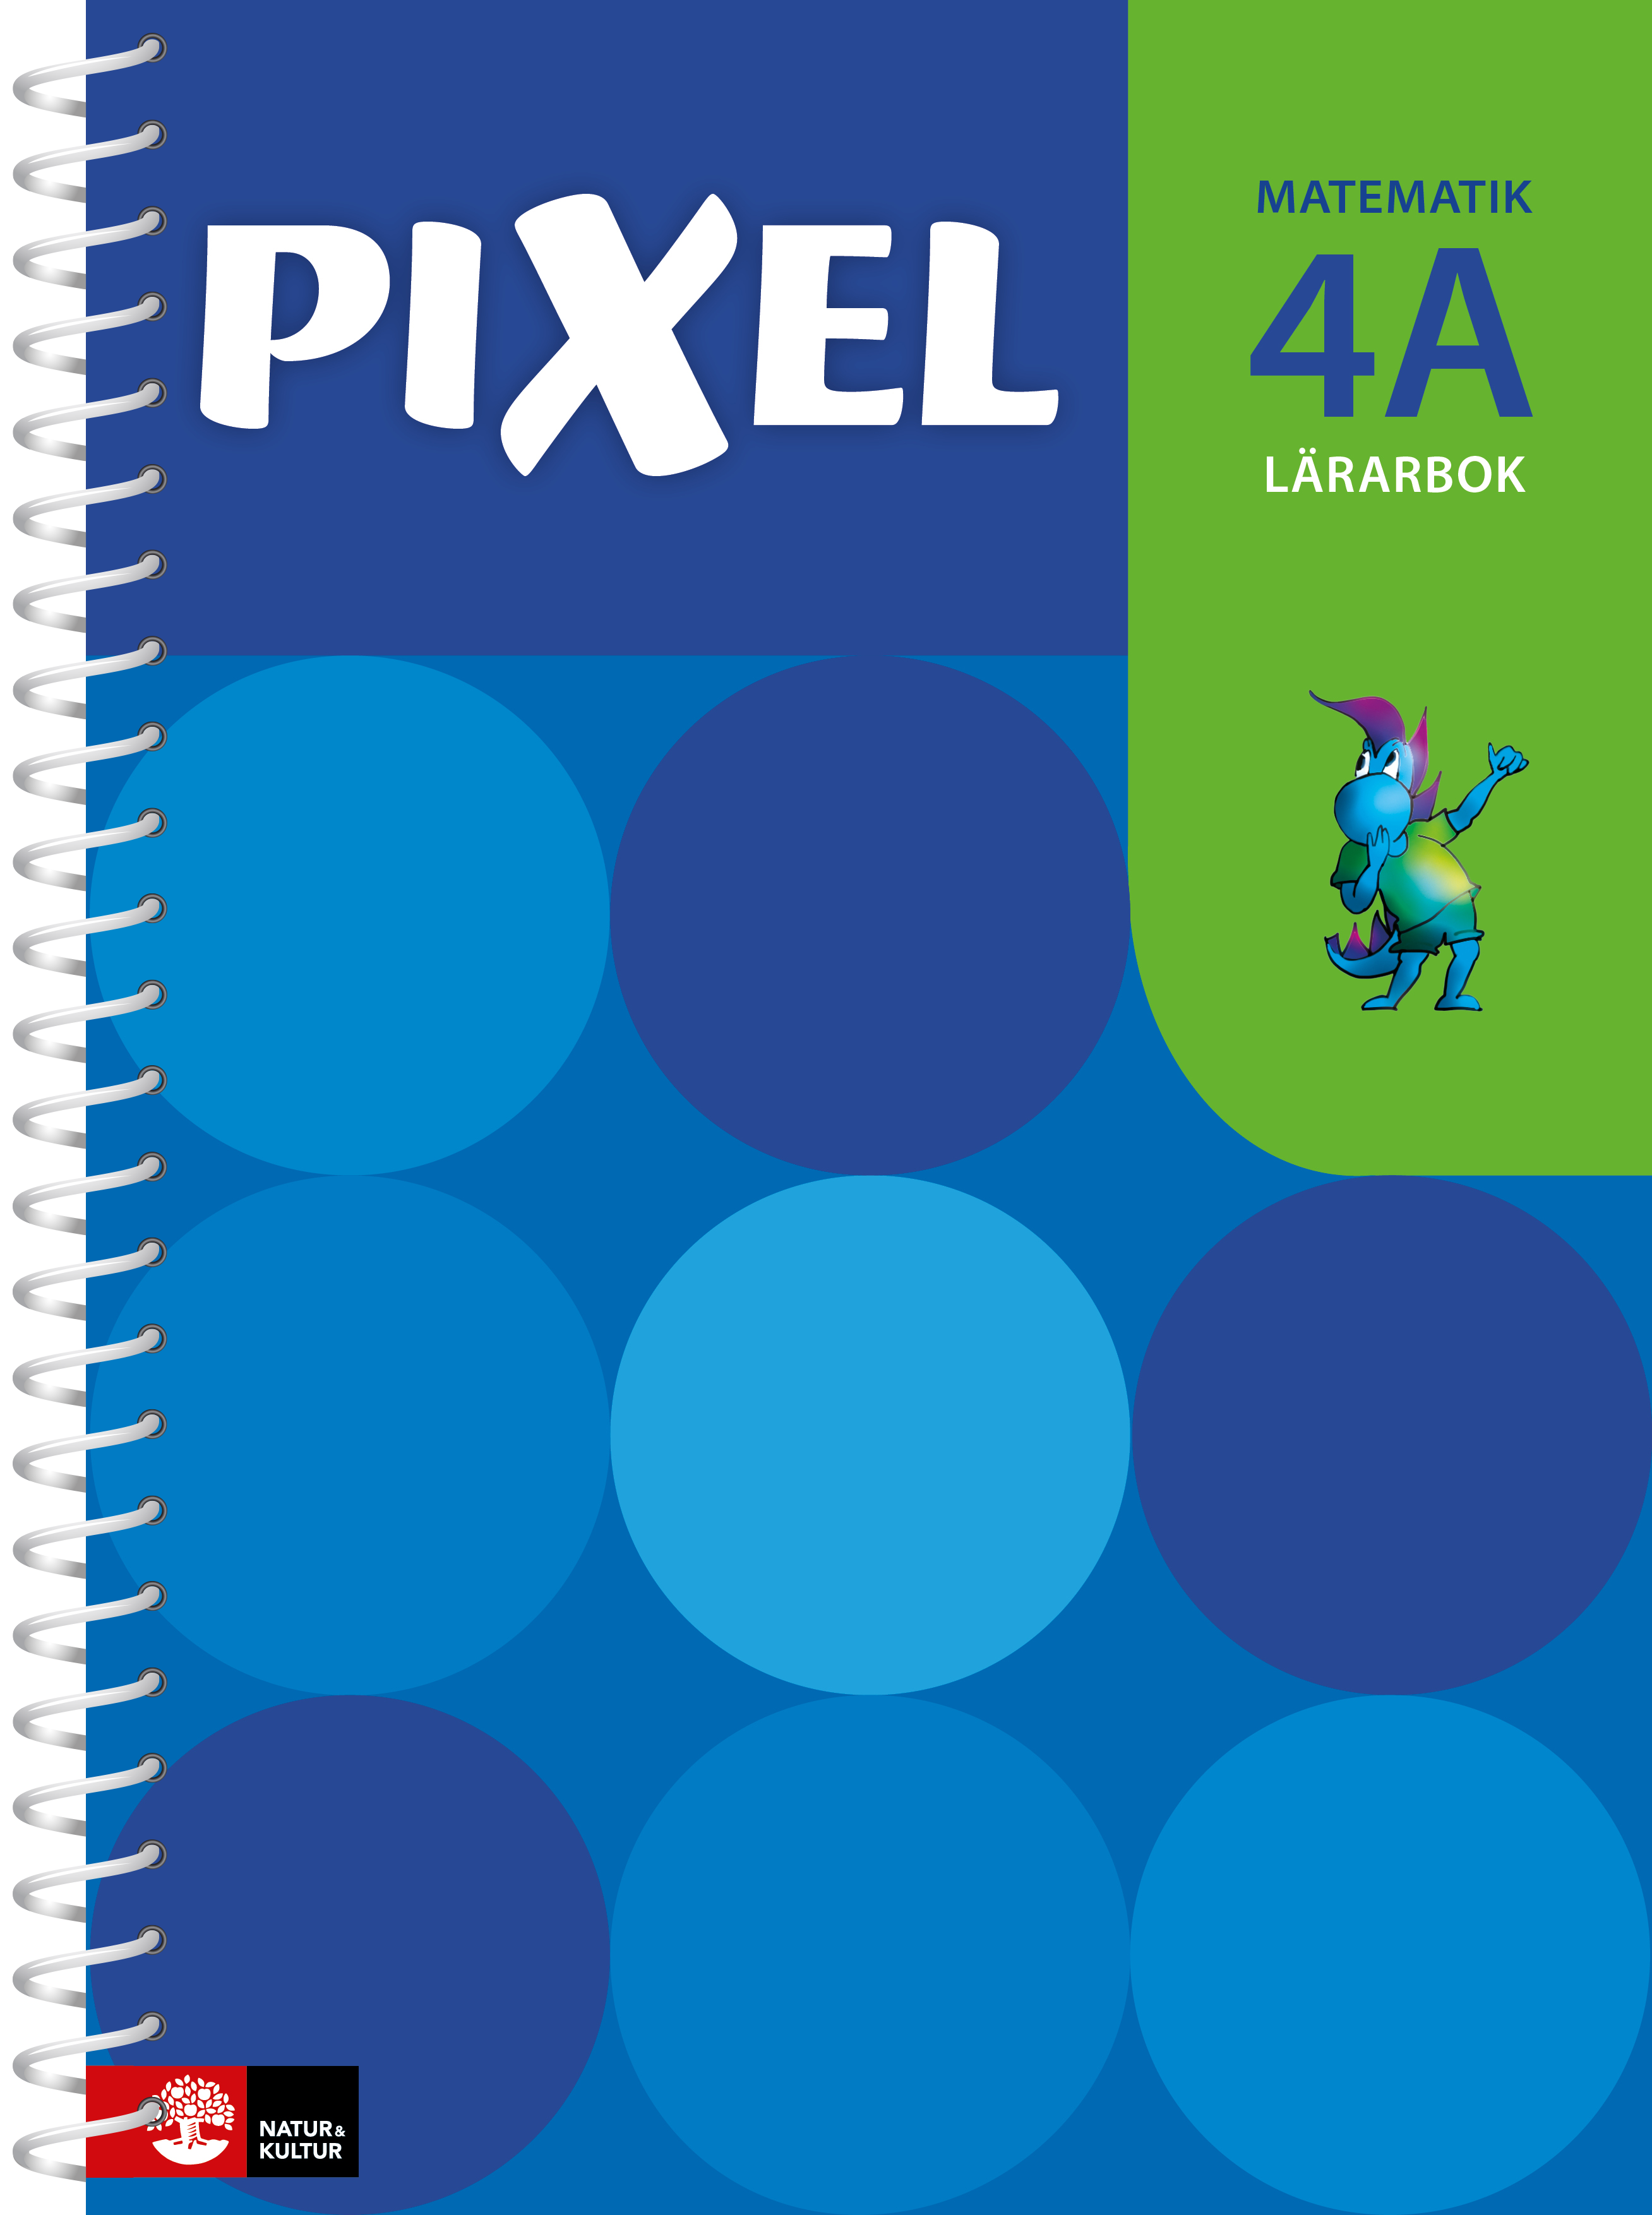 Pixel 4A Lärarbok, andra upplagan